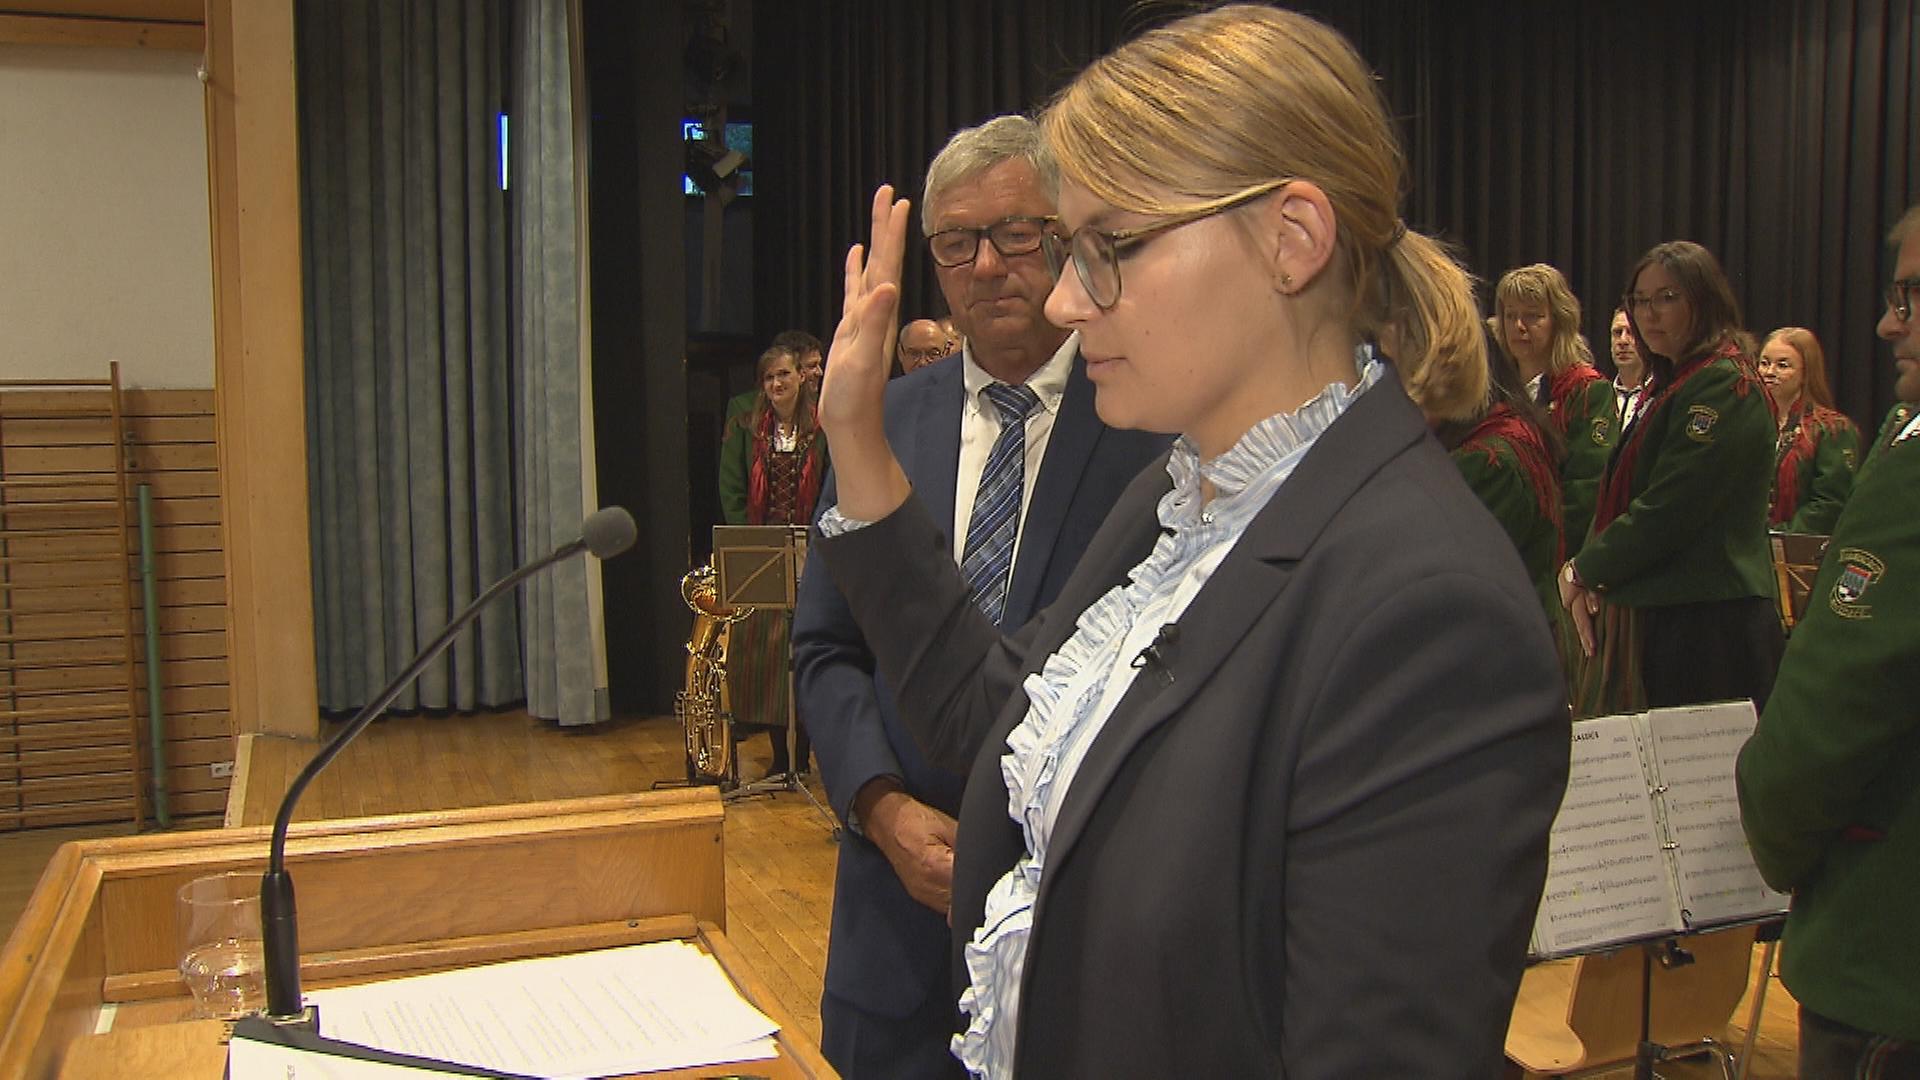 Mit 26 Jahren wurde Lena burth zur Bürgermeisterin gewählt.